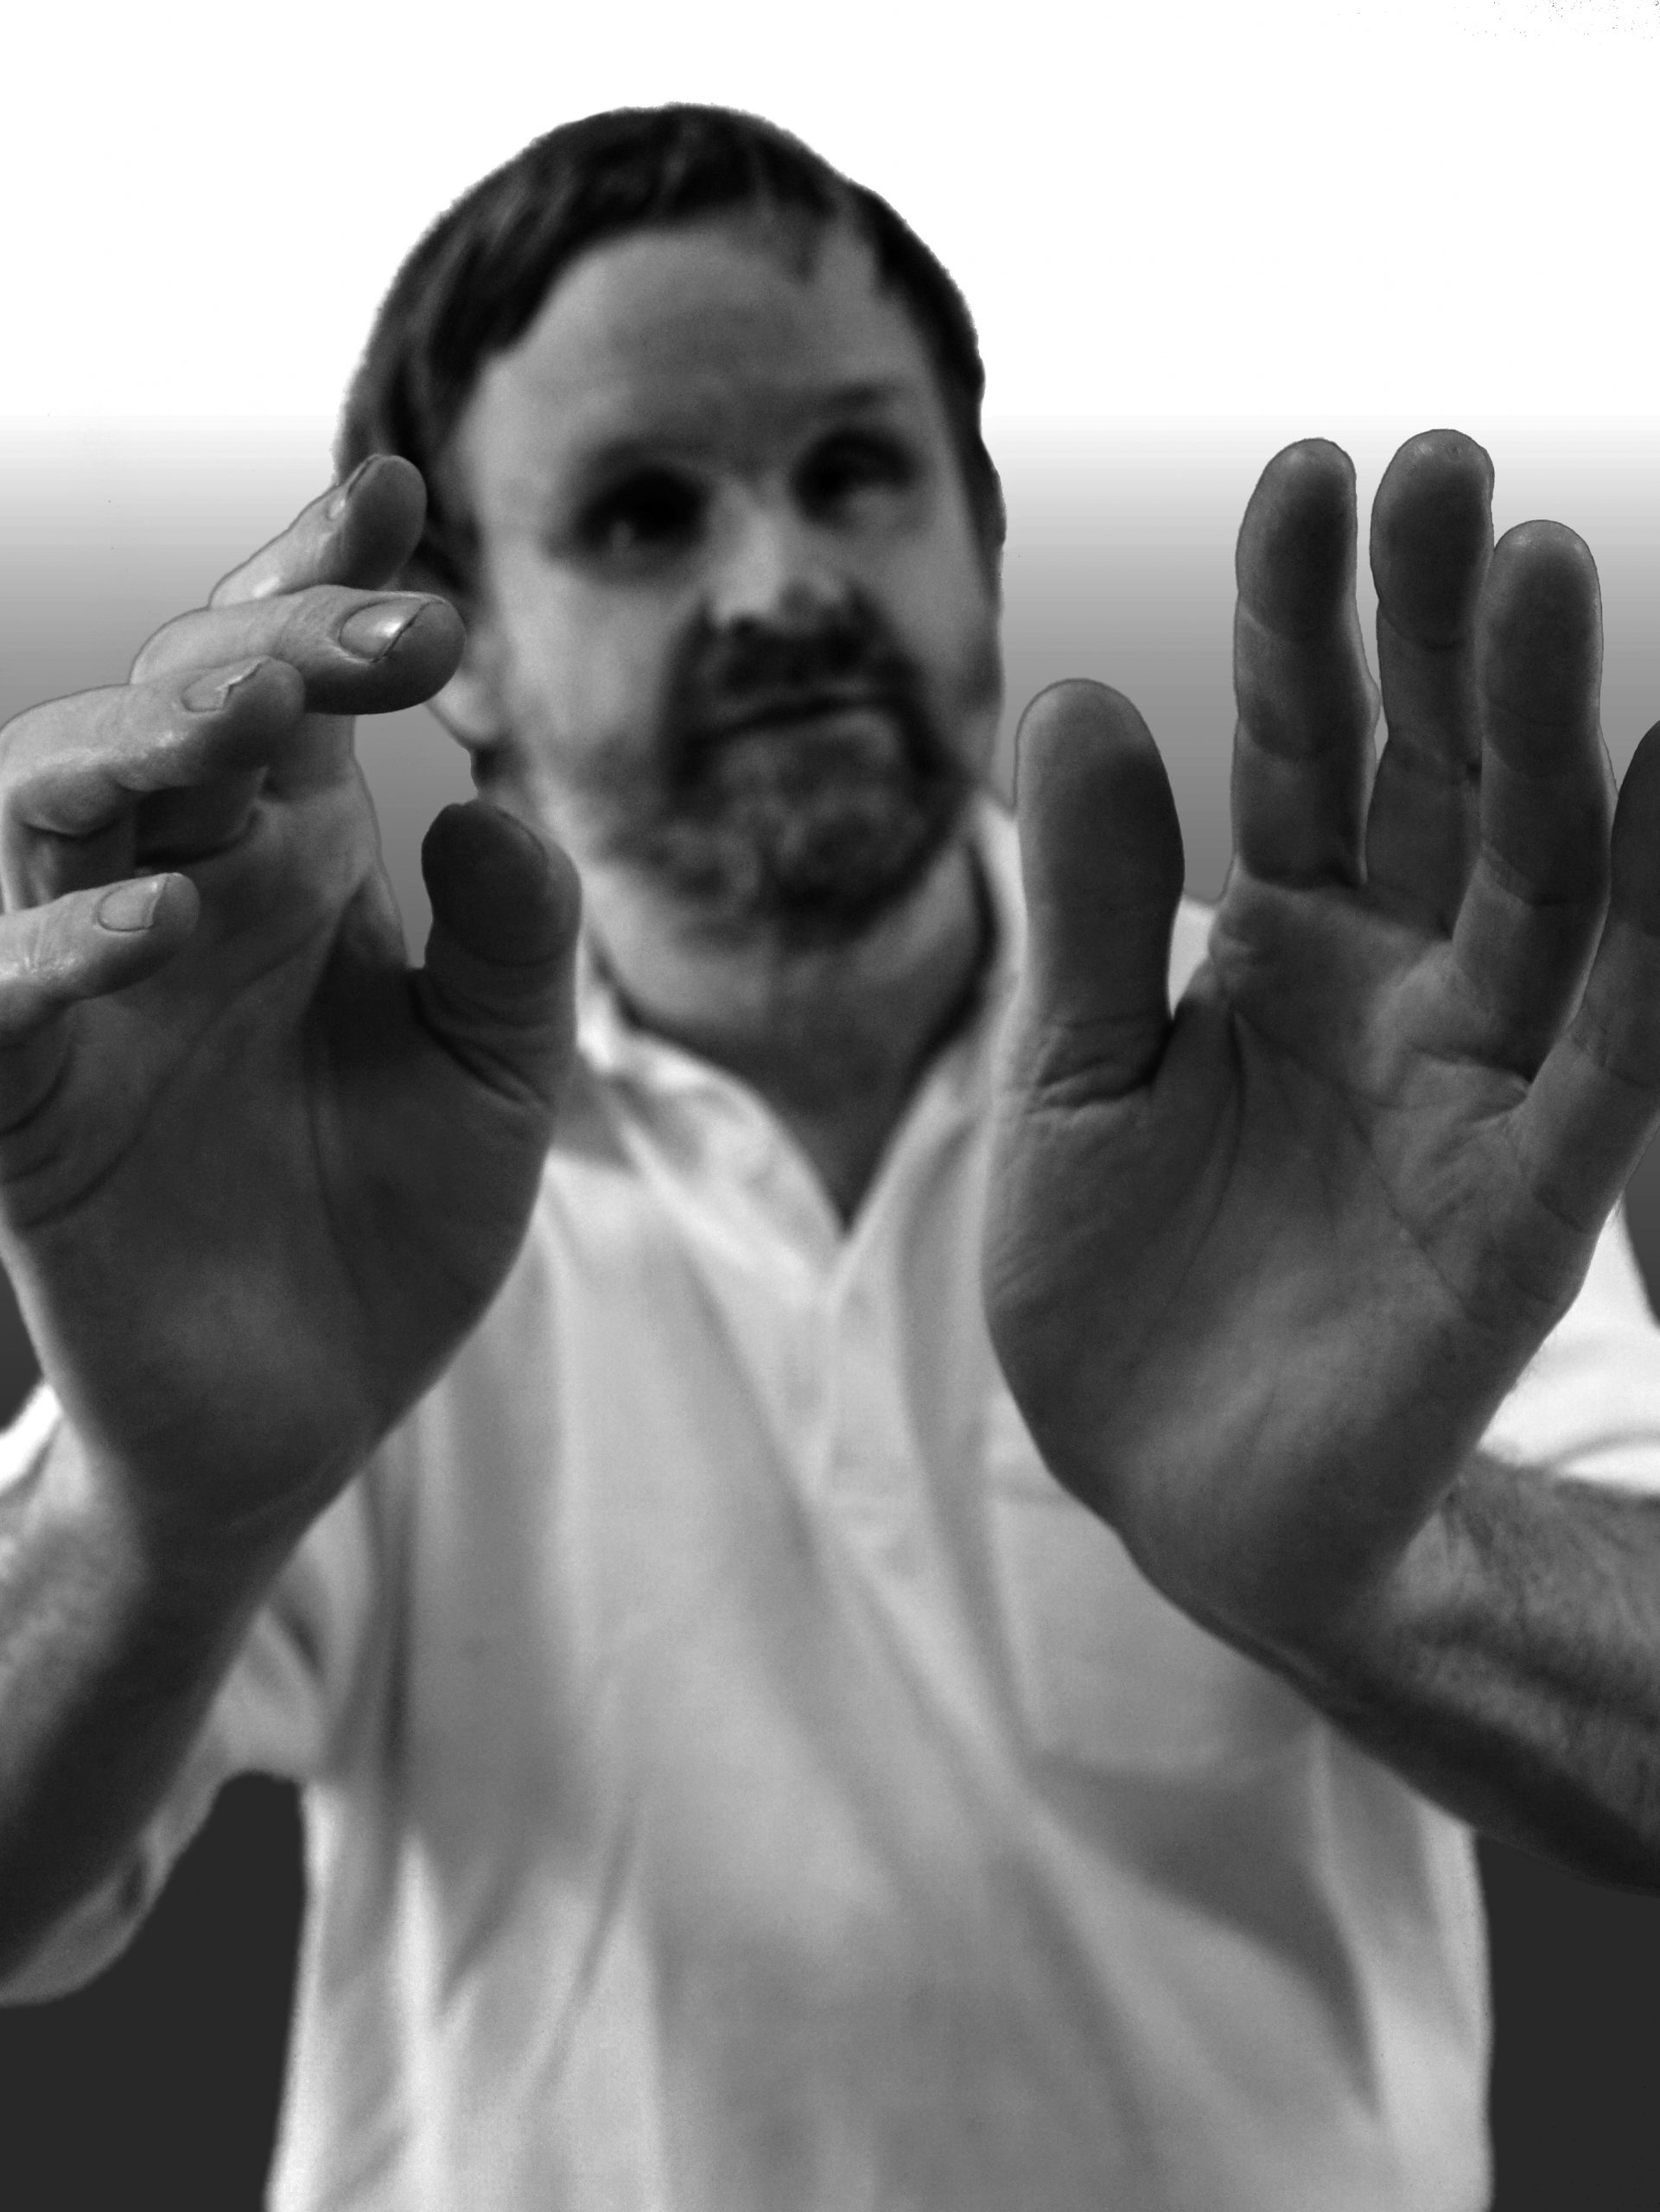 Die Hände von Olaf Garbow sind im Fokus des Bildes. Er hält diese nach vorne, so dass die Handinnenflächen zu sehen sind. Sein Gesicht und sein Oberkörper sieht man nur unscharf.